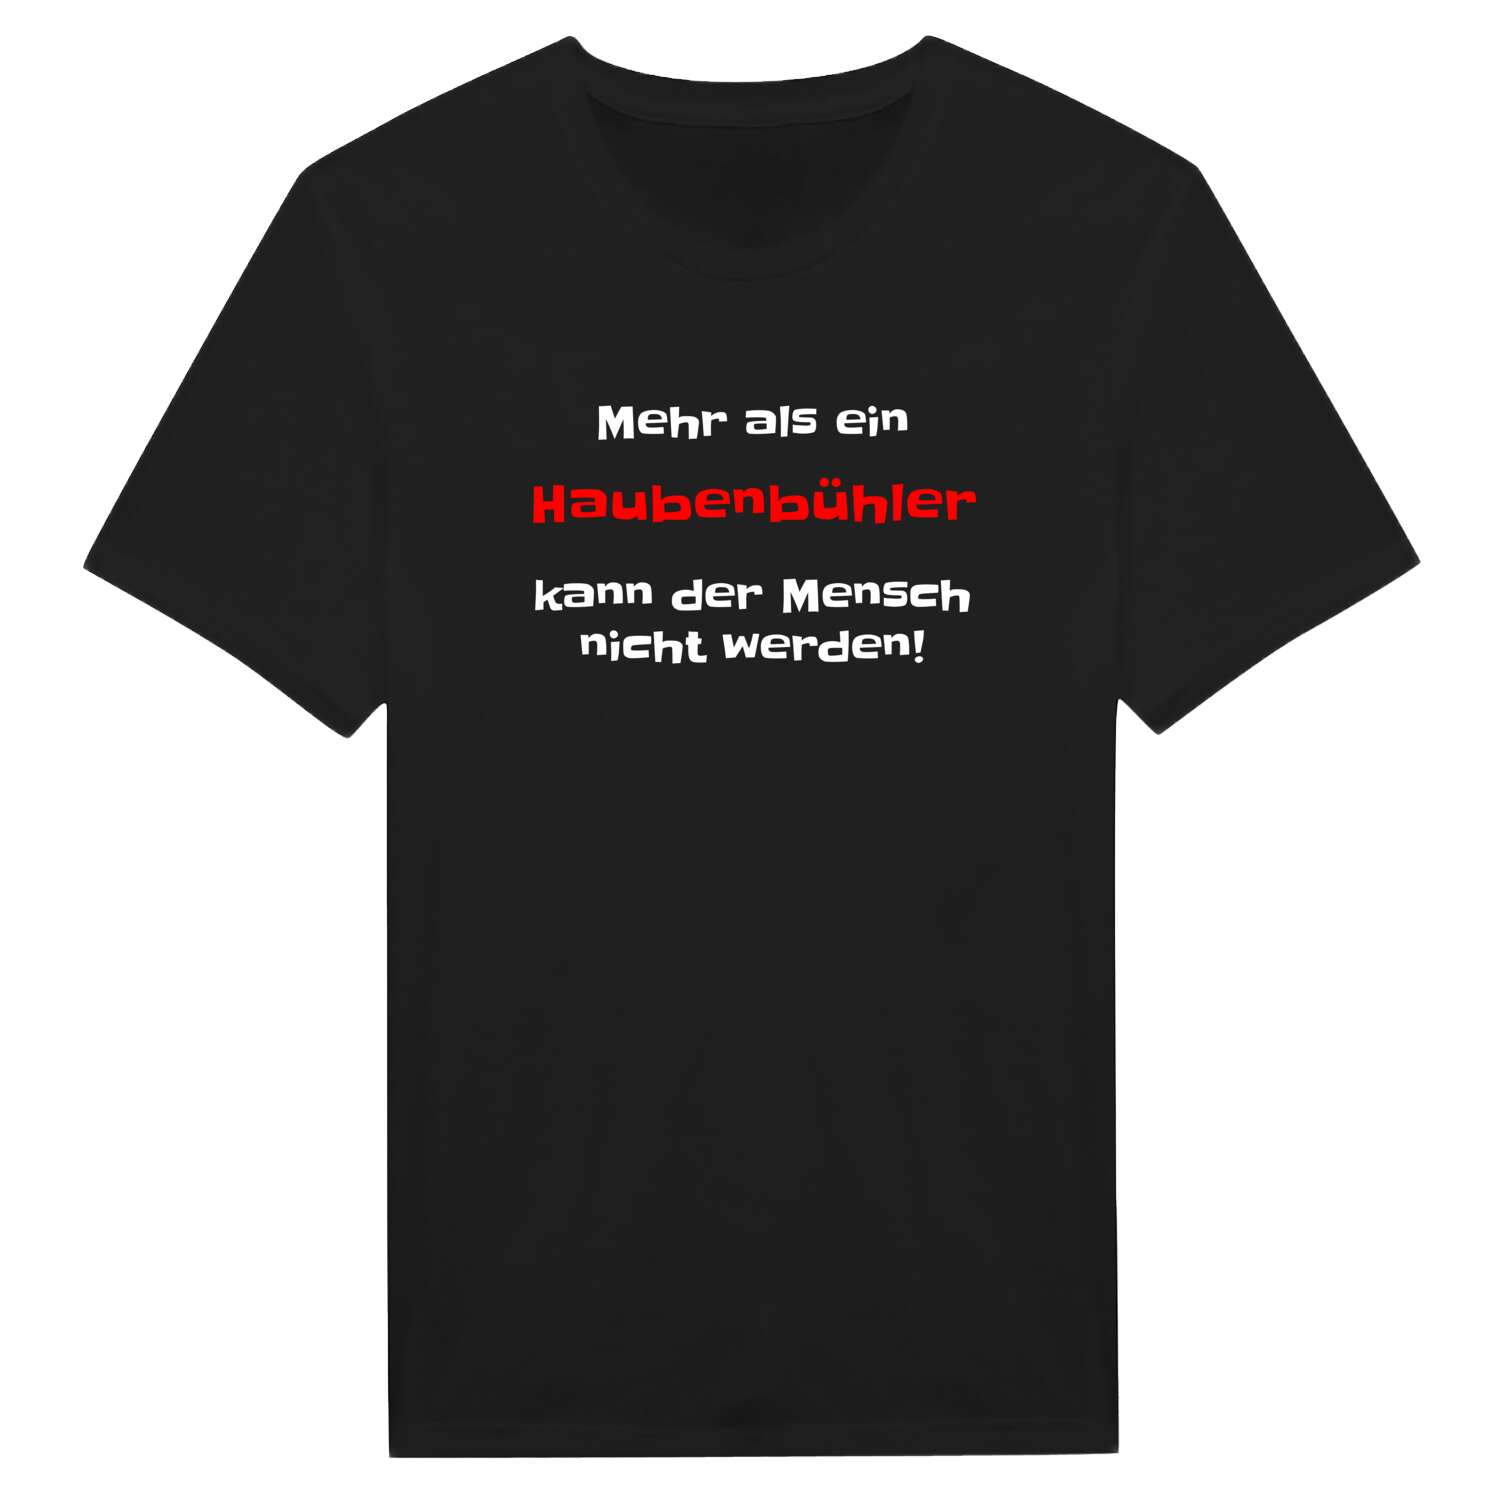 Haubenbühl T-Shirt »Mehr als ein«